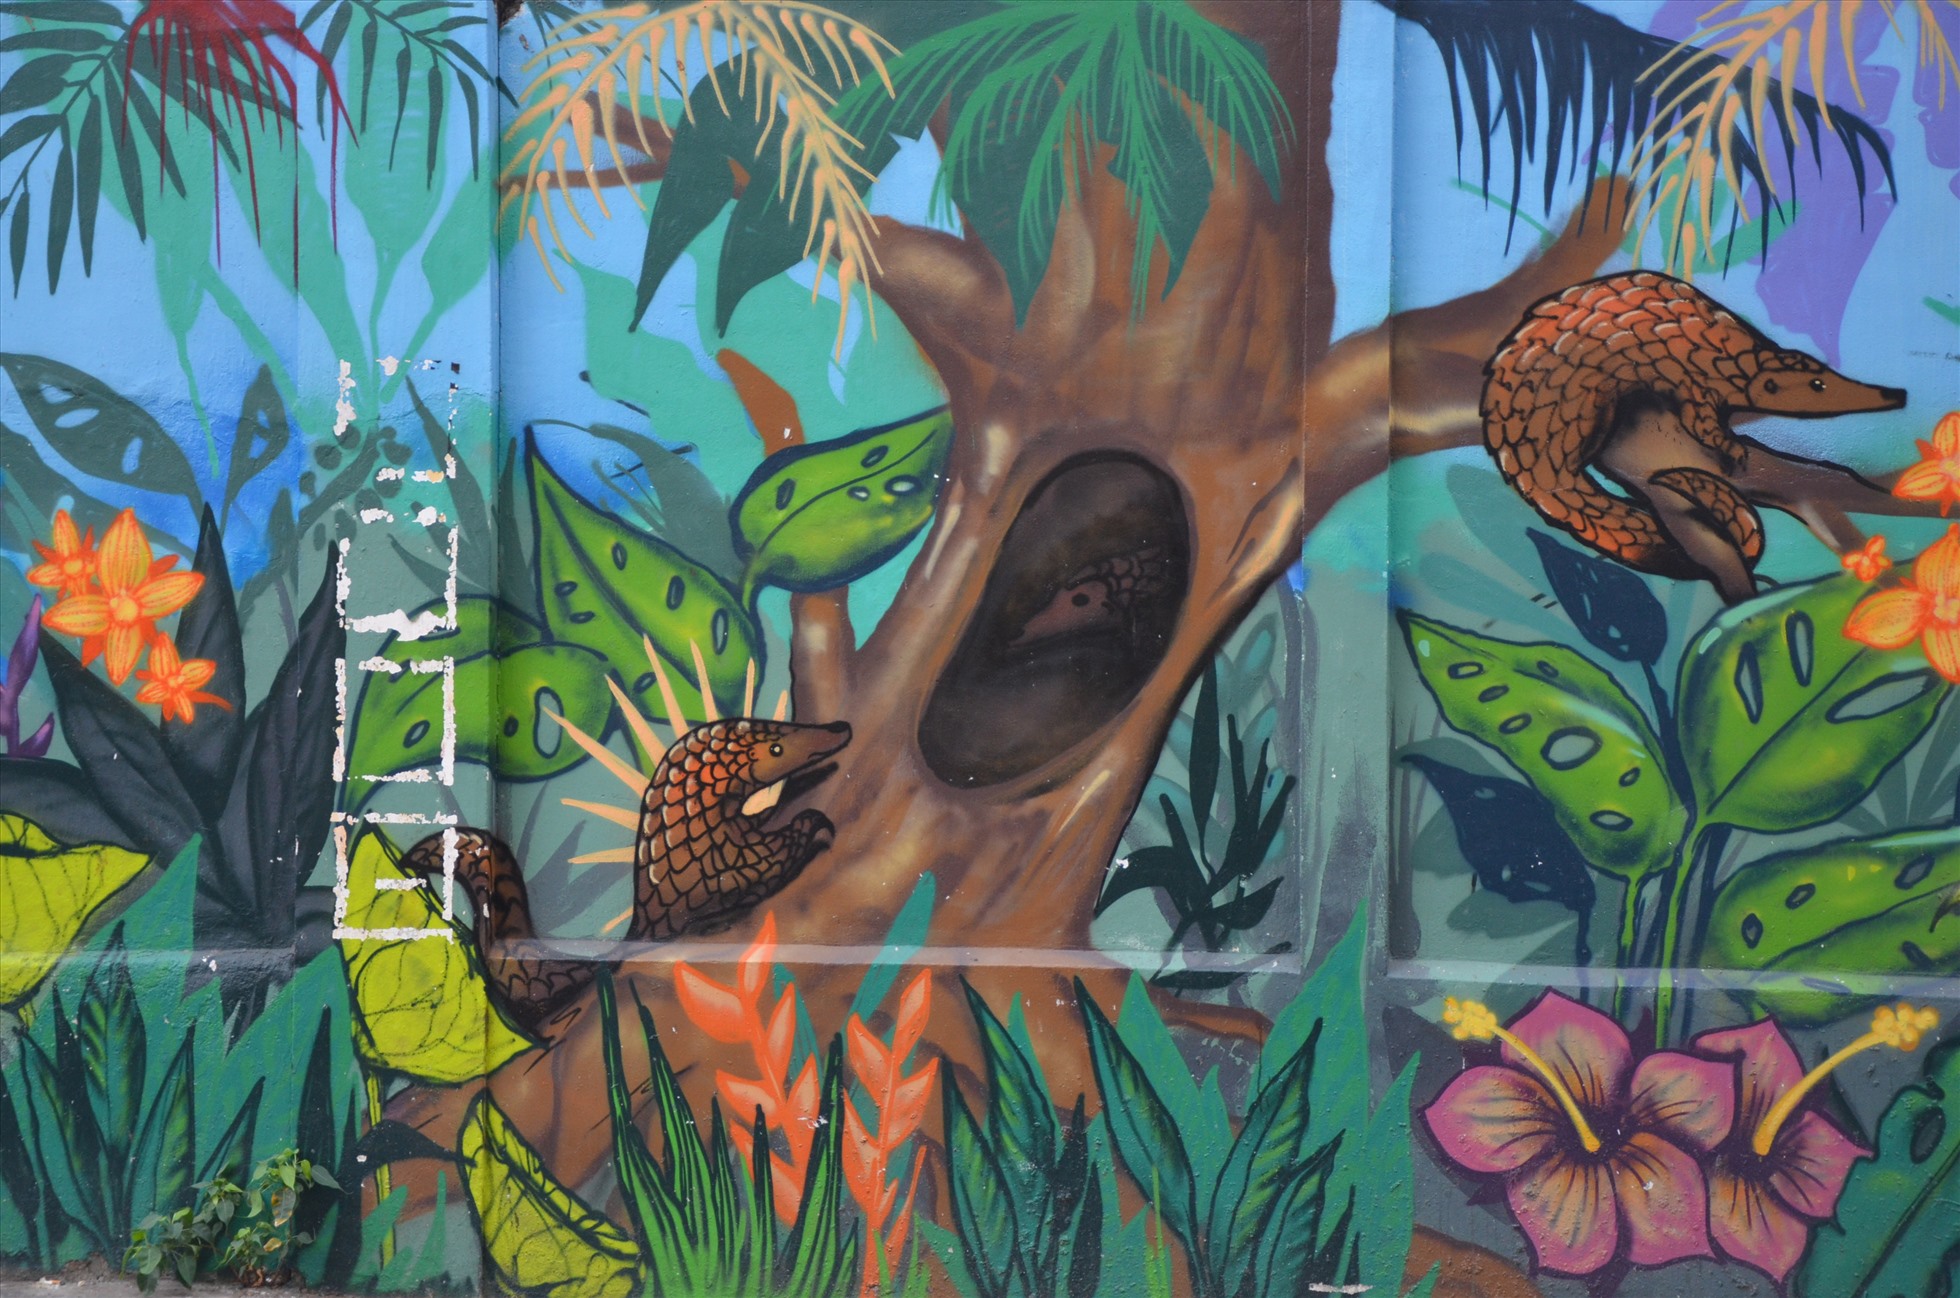 bức tranh trên đường Mai Thị Lựu được vẽ có chiều dài khoảng 20m với loài động vật chủ đạo là tê tê